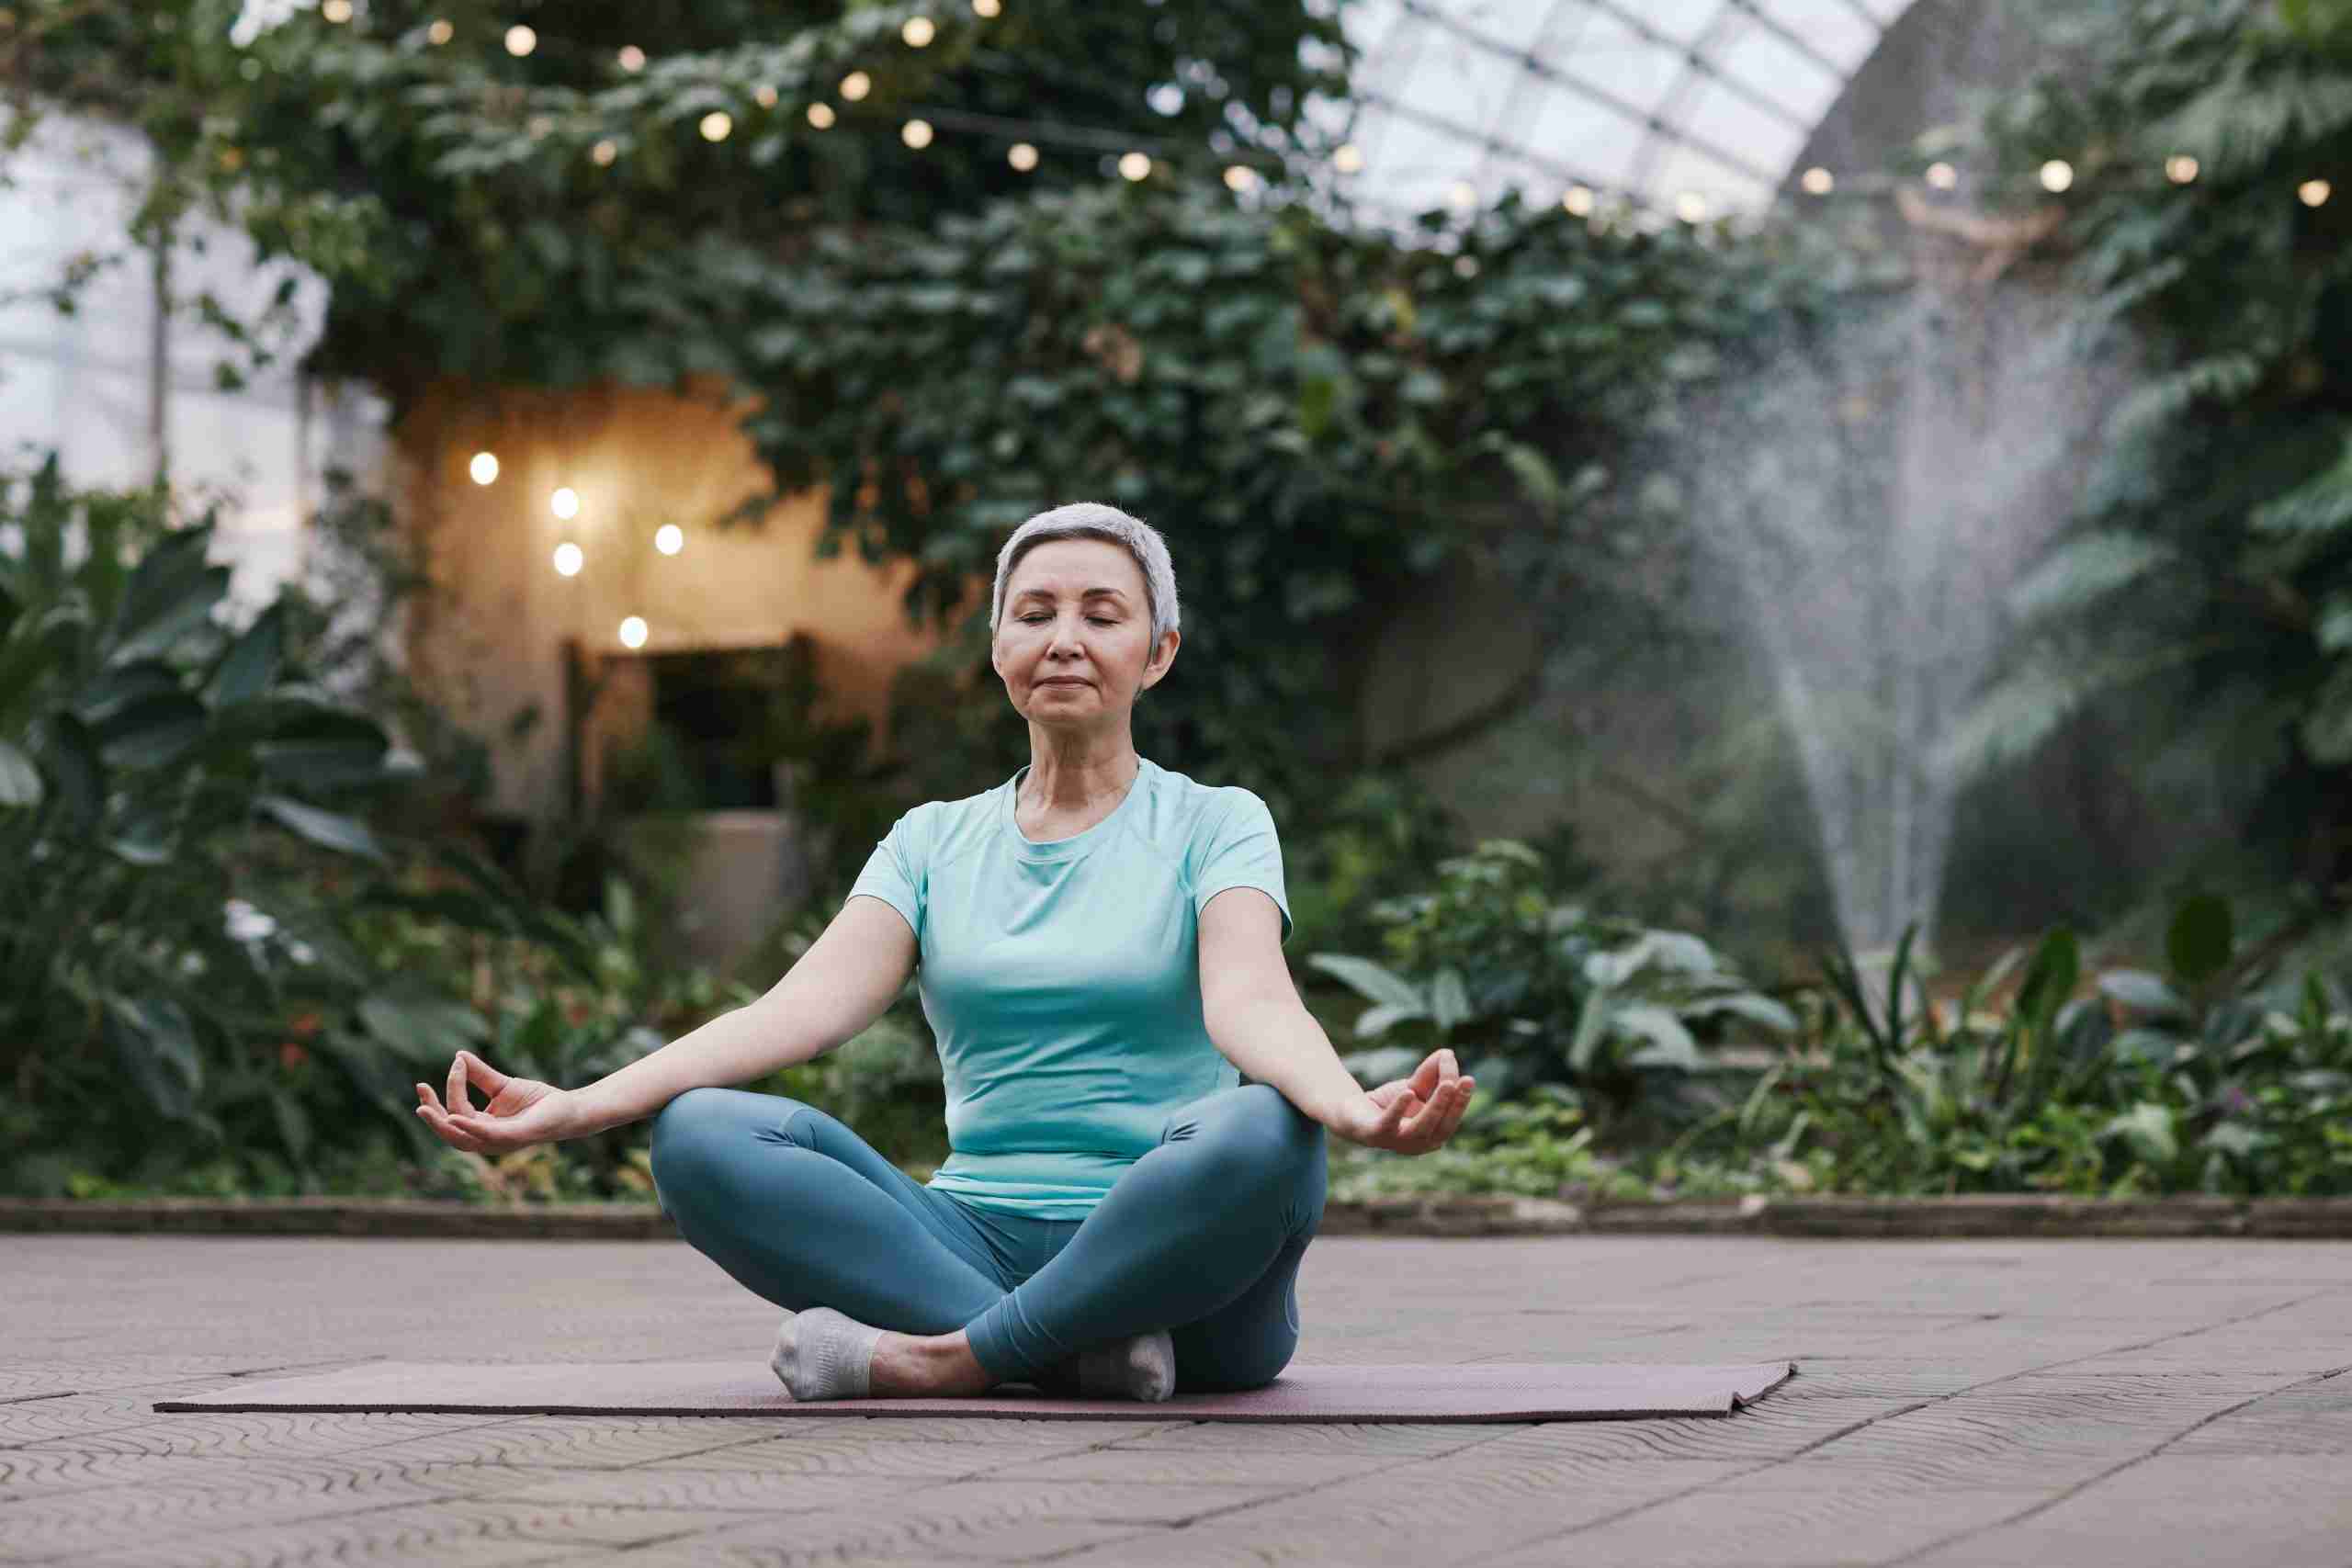 dame âgée assise sur un tapis de yoga en train de méditer dans un beau jardin verdoyant santé et beauté https://before-night-falls.com/